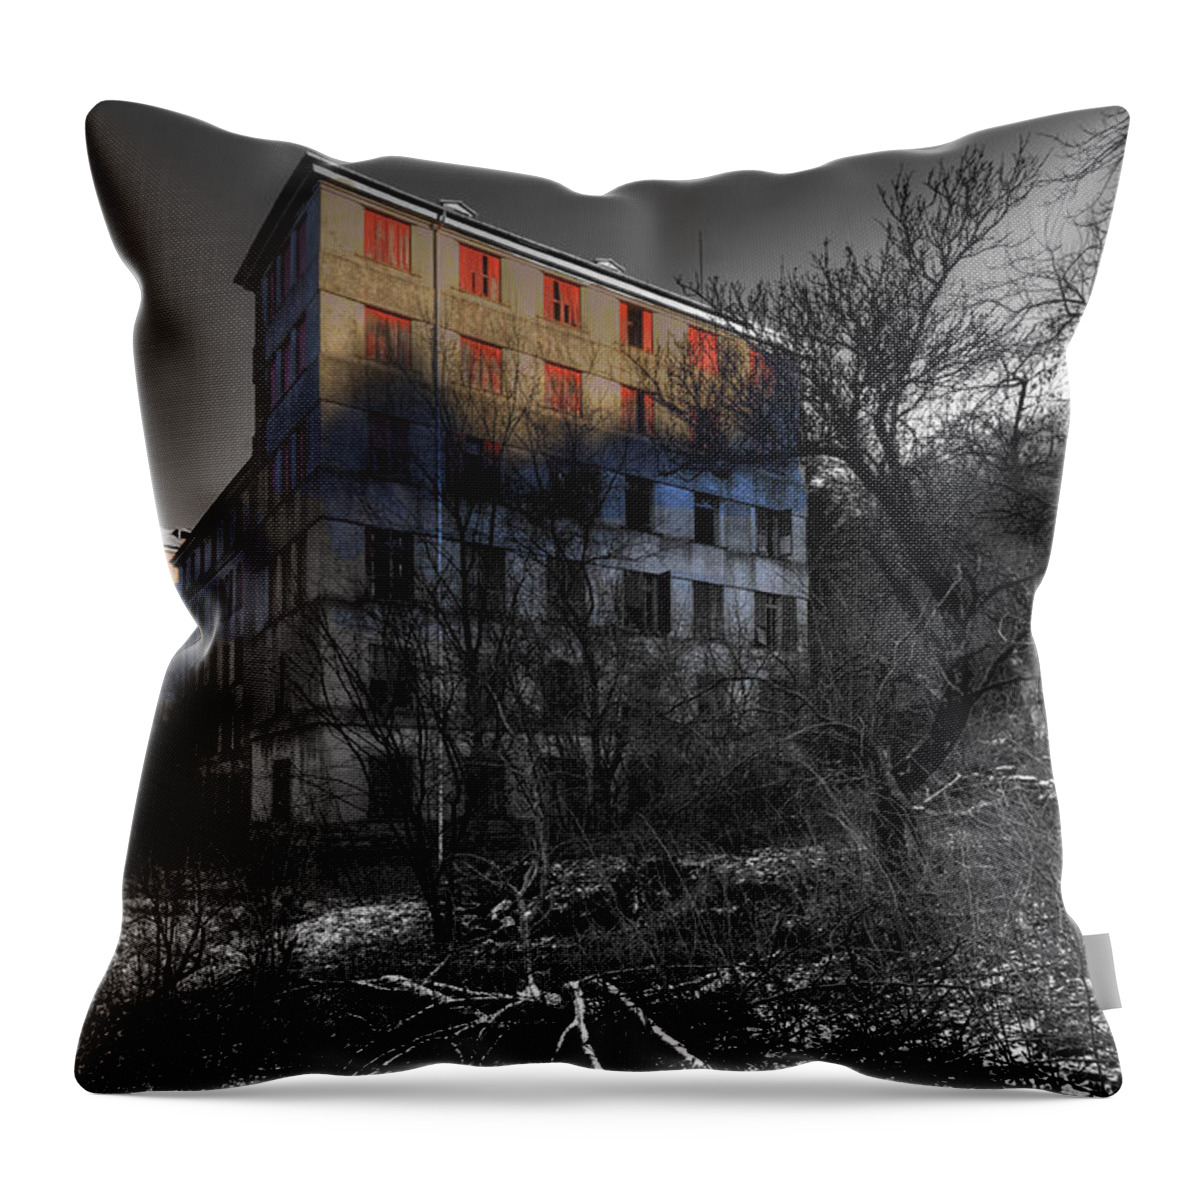 Paesi Abbandonati Throw Pillow featuring the photograph THE HOUSE of MISTERY 2 ABANDONED ASYLUM COLONIA ABBANDONATA della FONDAZIONE DEVOTO by Enrico Pelos